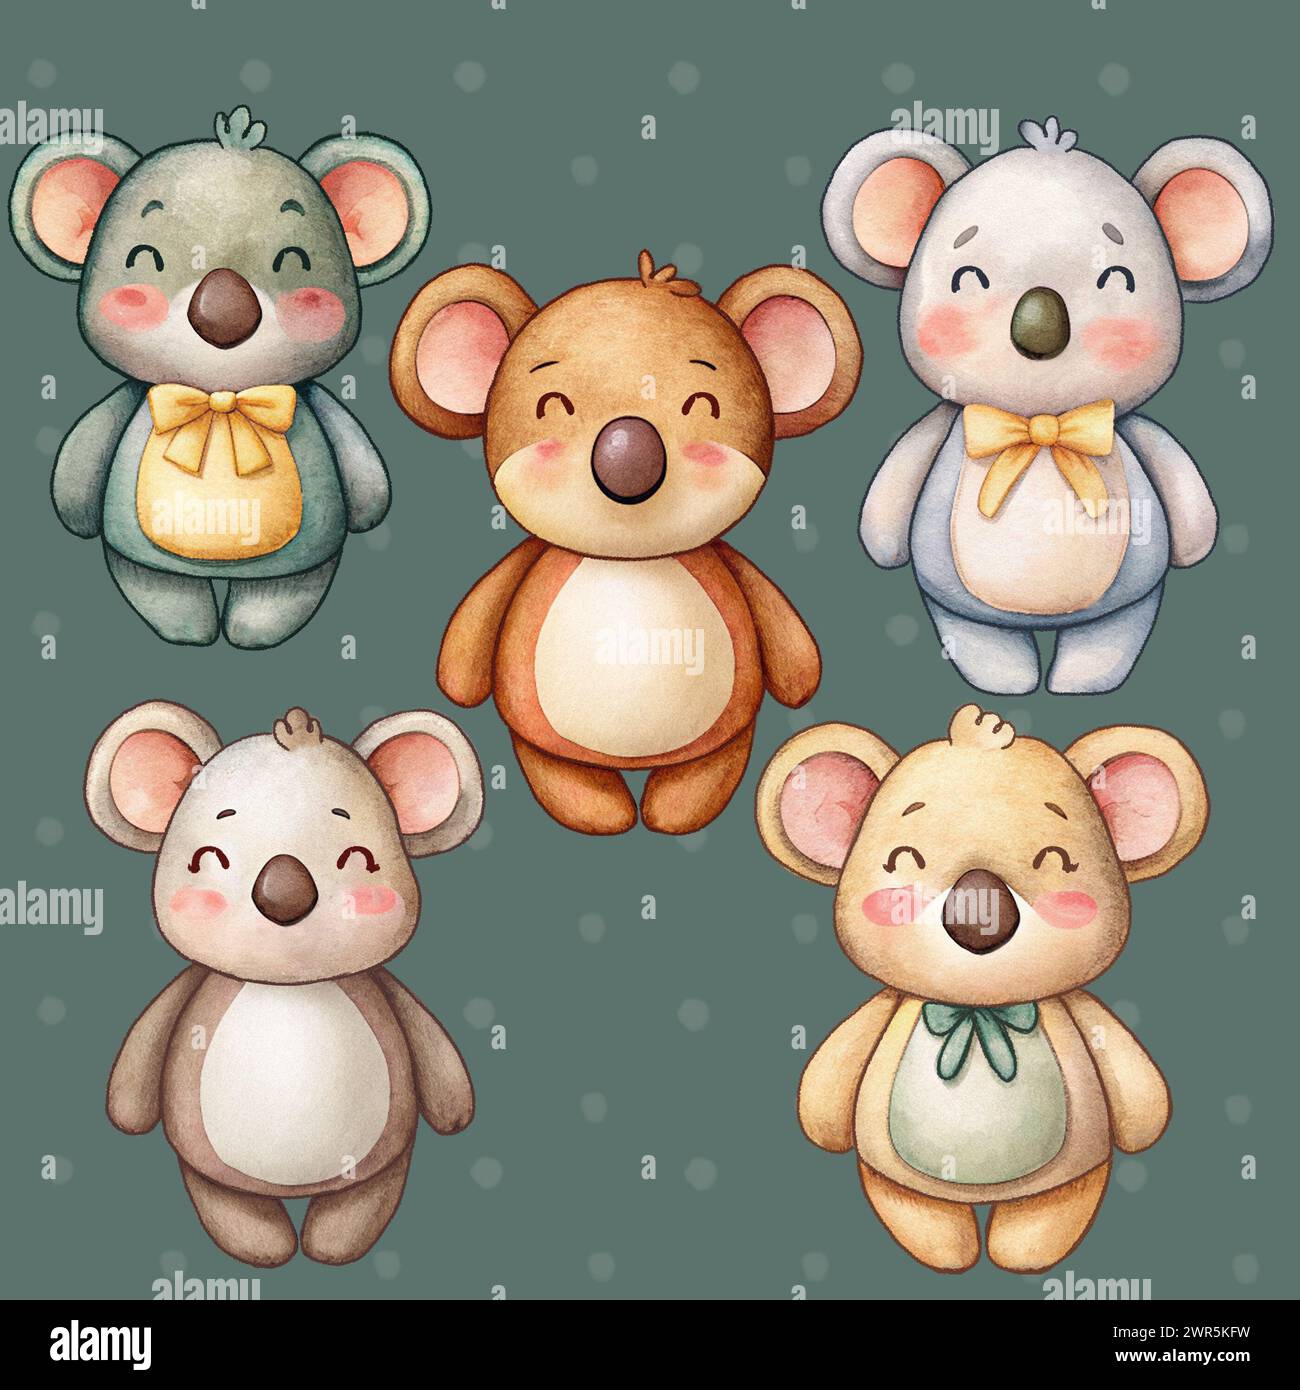 koala ours autocollants collection isolée adorable adorable enfants mignon illustration faite à la main pour la décoration des bébés et des enfants Banque D'Images